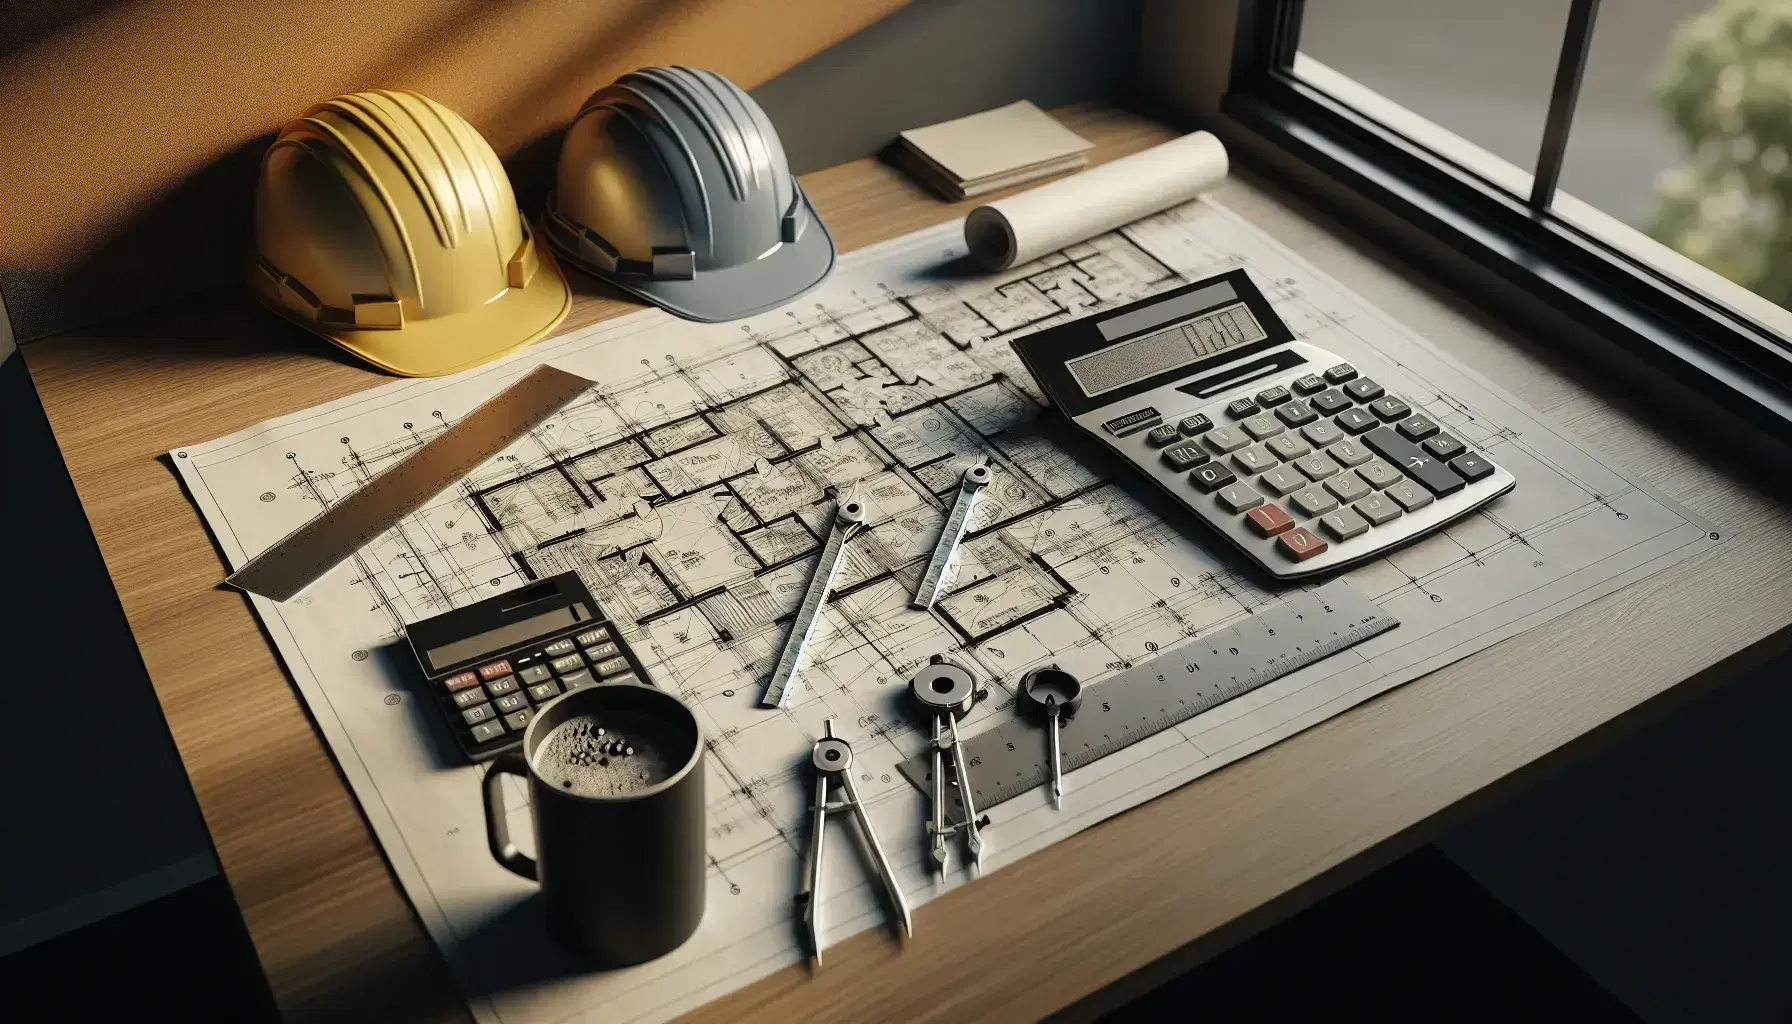 Mesa de trabajo en oficina de construcción con planos arquitectónicos, cascos de seguridad, regla T, compás metálico, calculadora científica y taza de café.